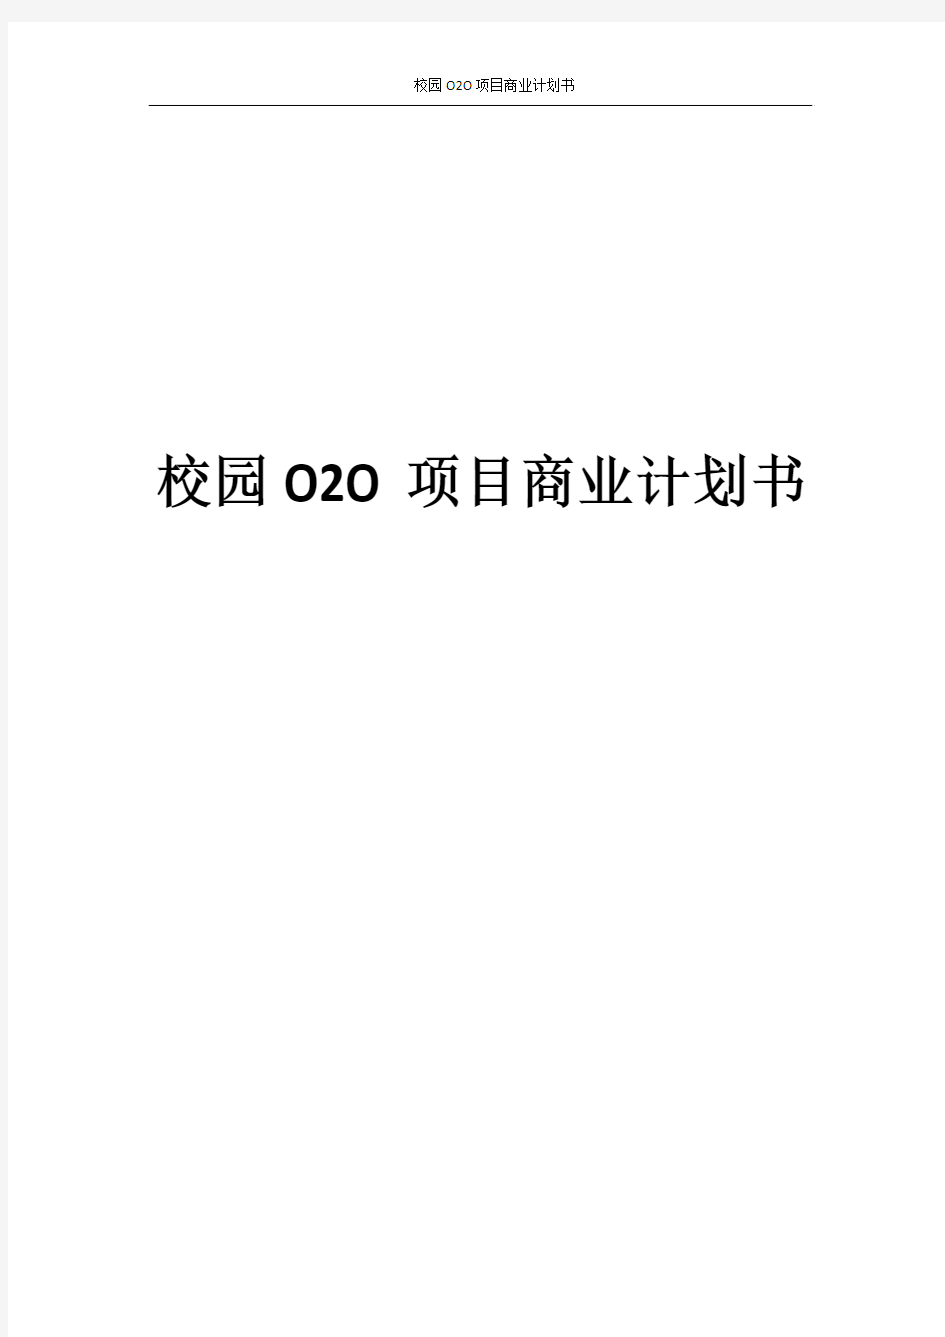 校园O2O项目商业计划书